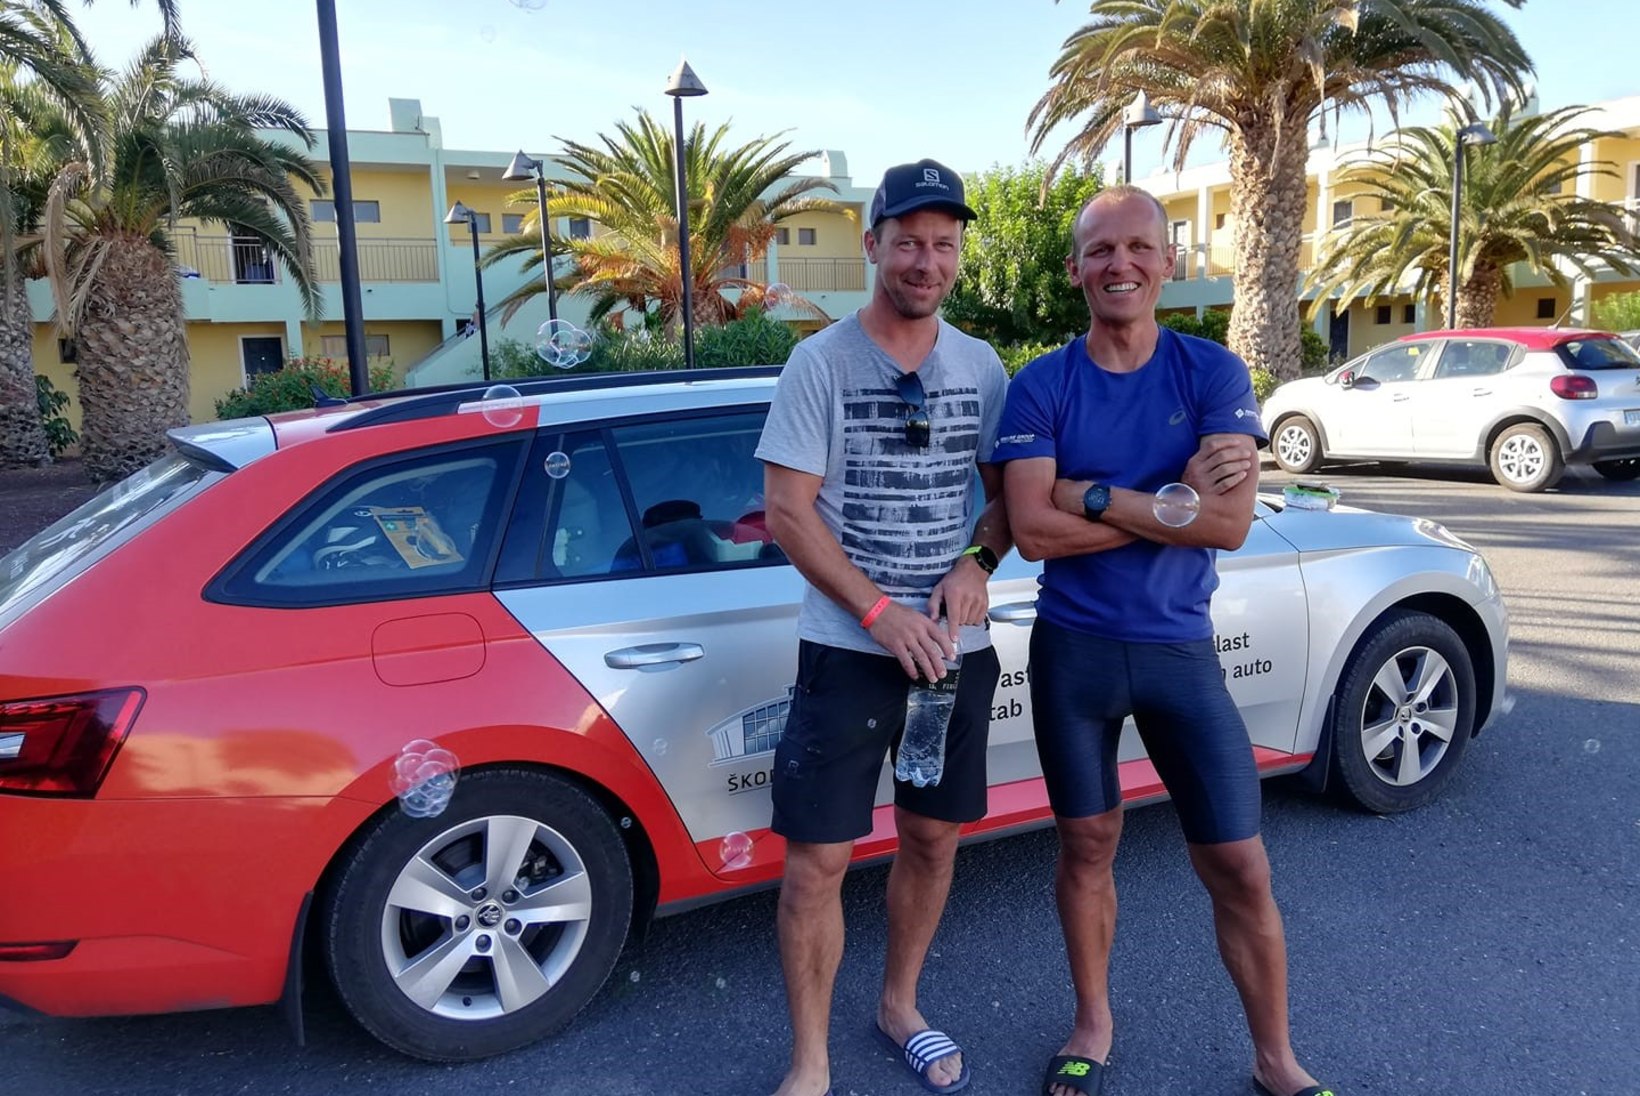 USKUMATU MEES! 20 triatlonit läbinud Ratasepp ei näita välja väsimuse märkigi ja sõidab autoga Hispaaniast koju